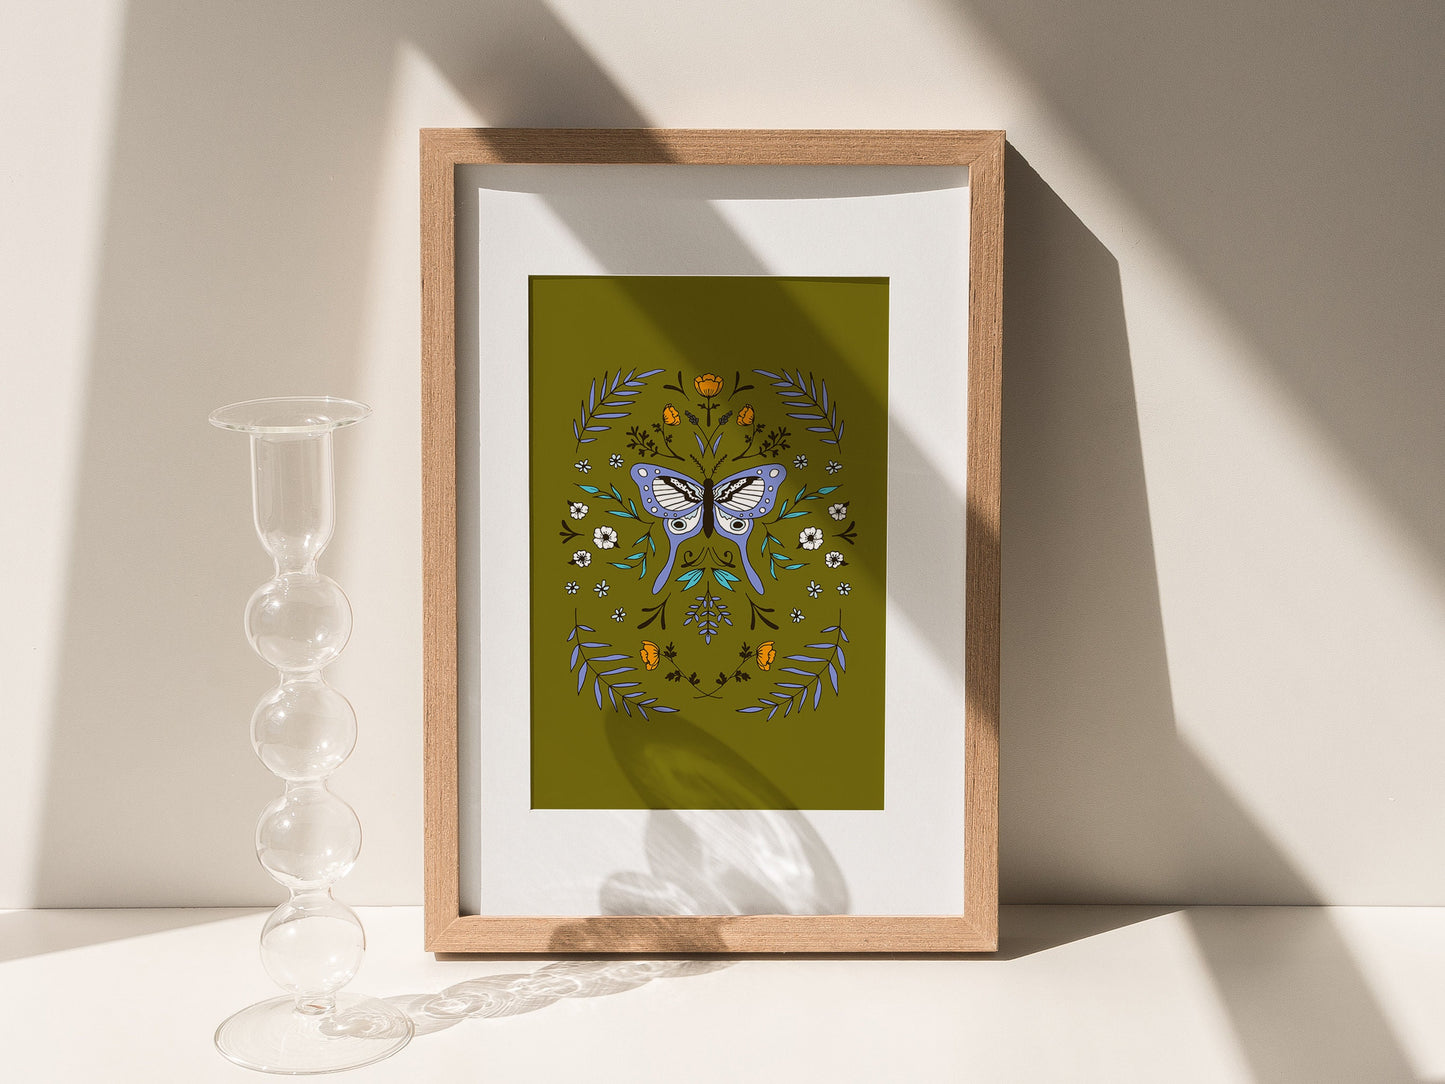 Botanical Butterfly Digital Art Print - Green